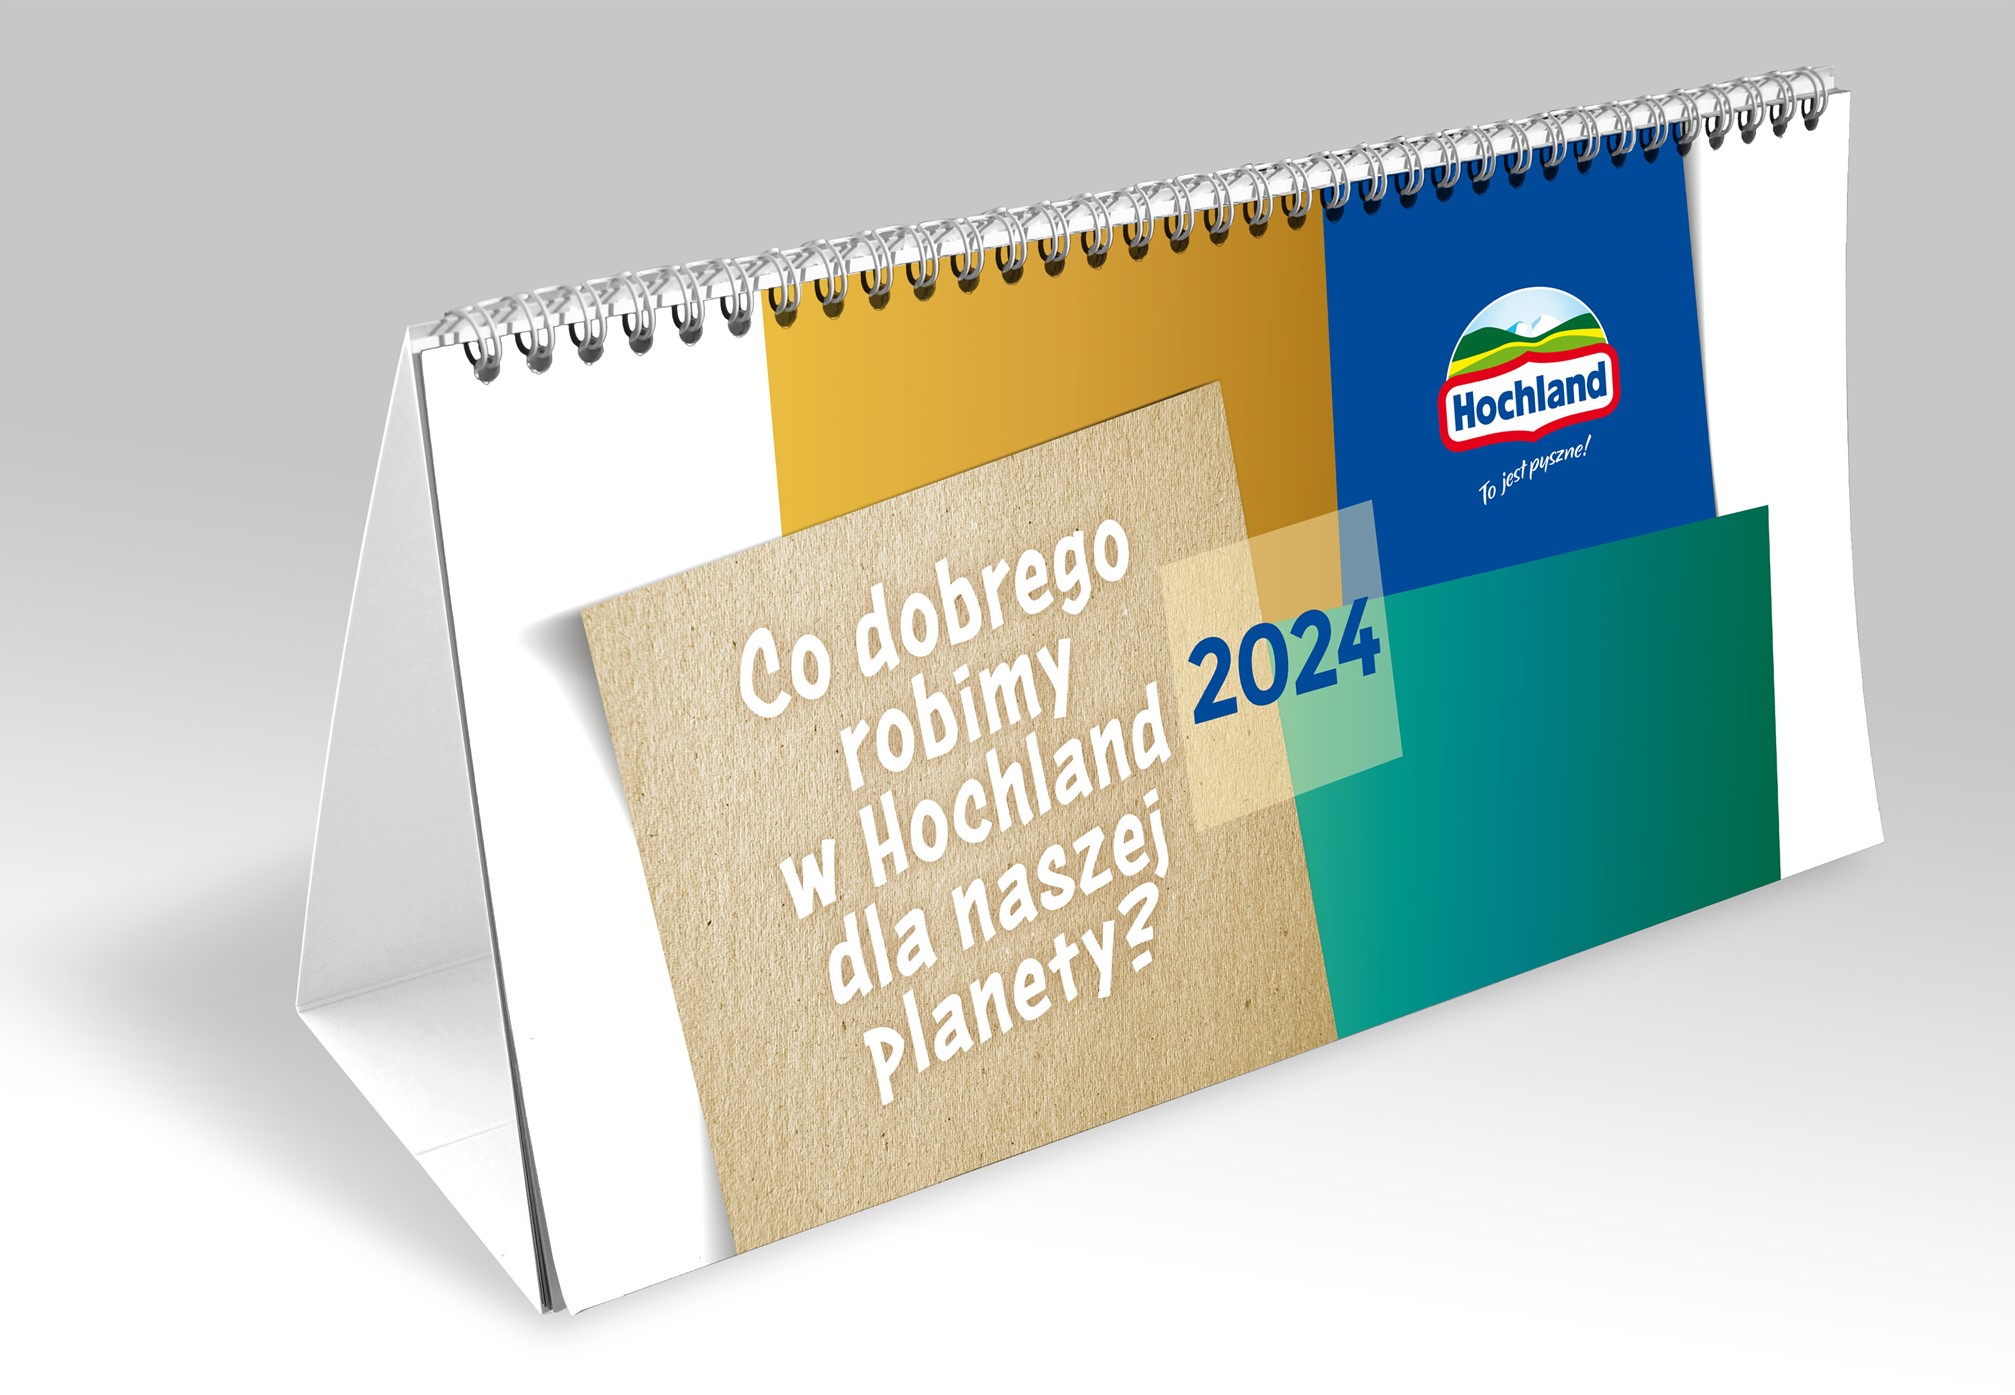 Jest już Kalendarz Hochland Polska 2024 „Co dobrego robimy w Hochland dla naszej planety”!